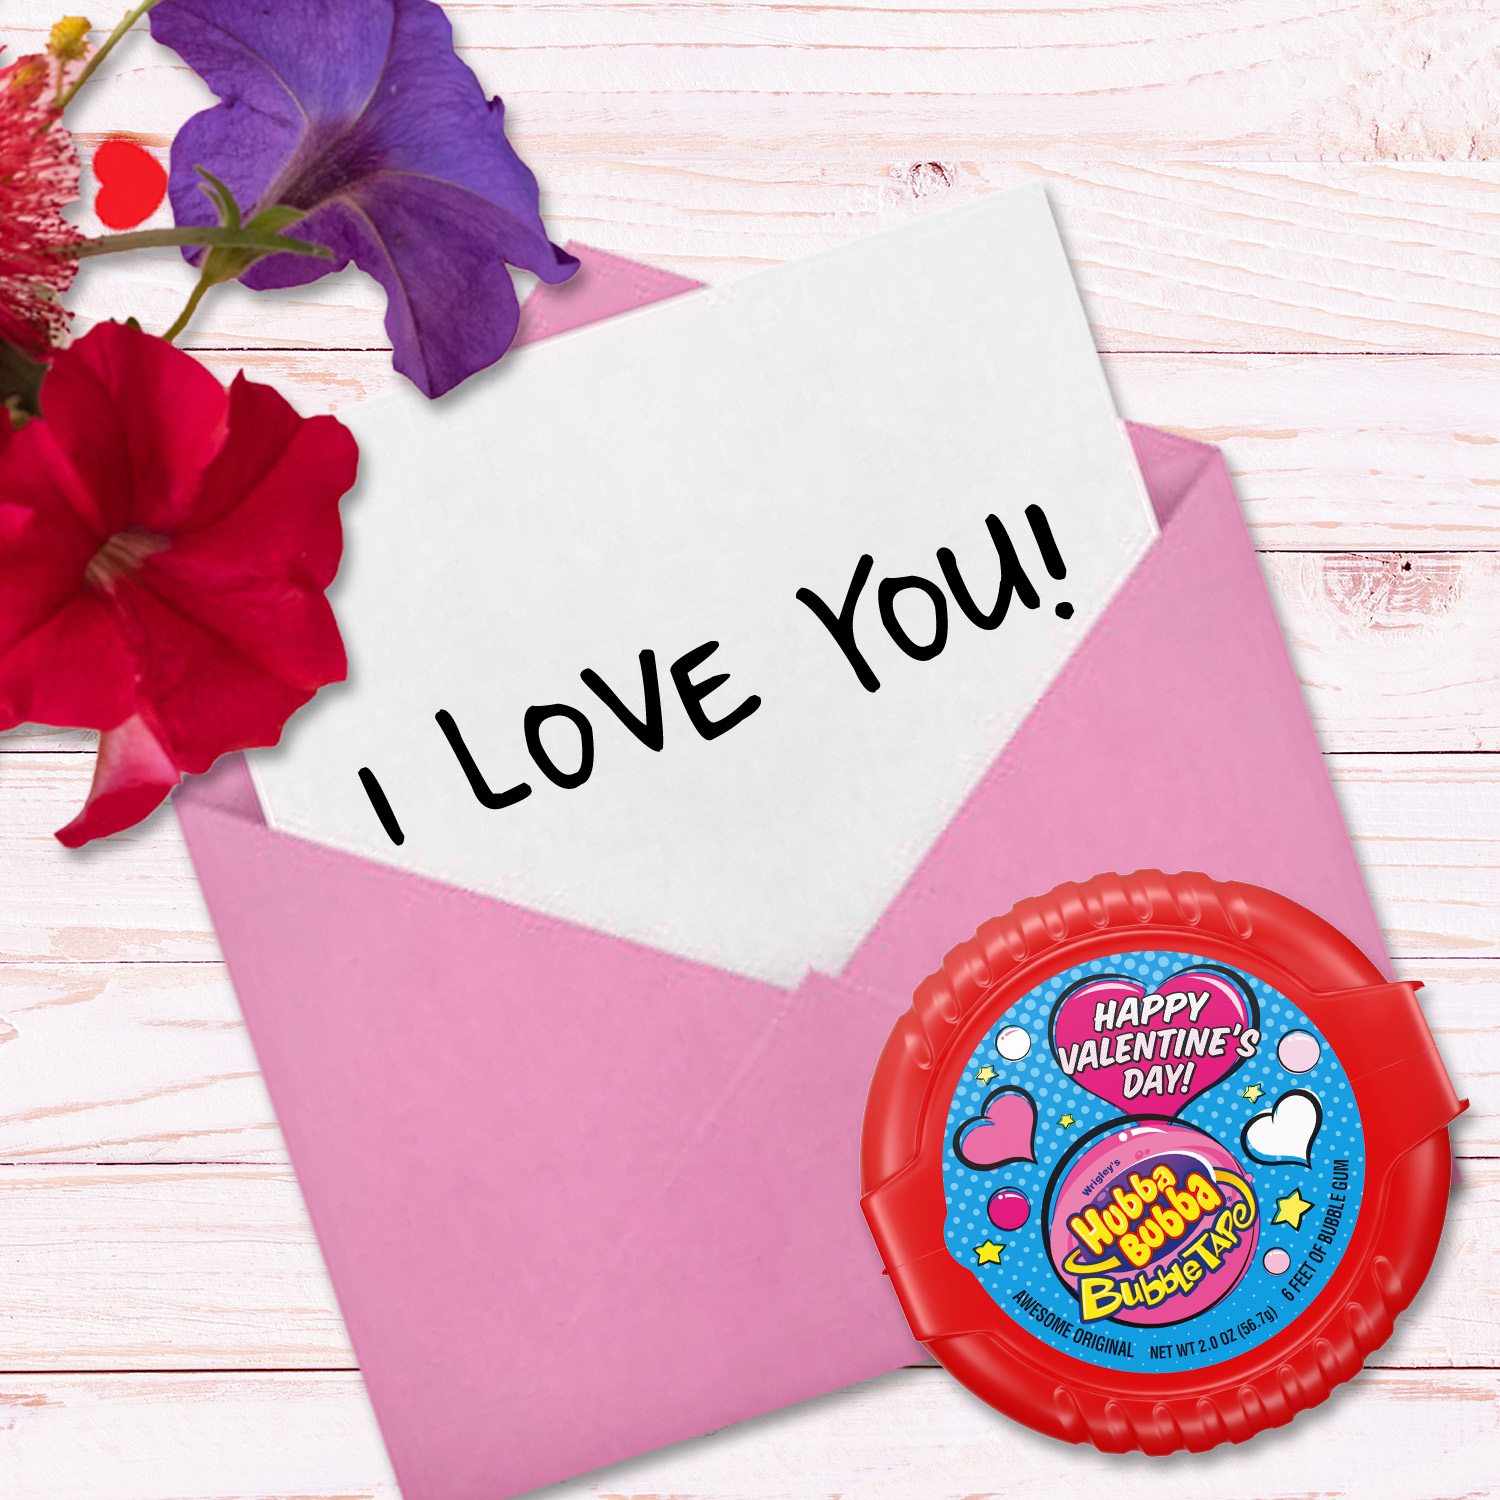 Hubba Bubba Bubble Tape Chewing Gum, Valentine's Bubble Gum - 2 oz - image 4 of 9